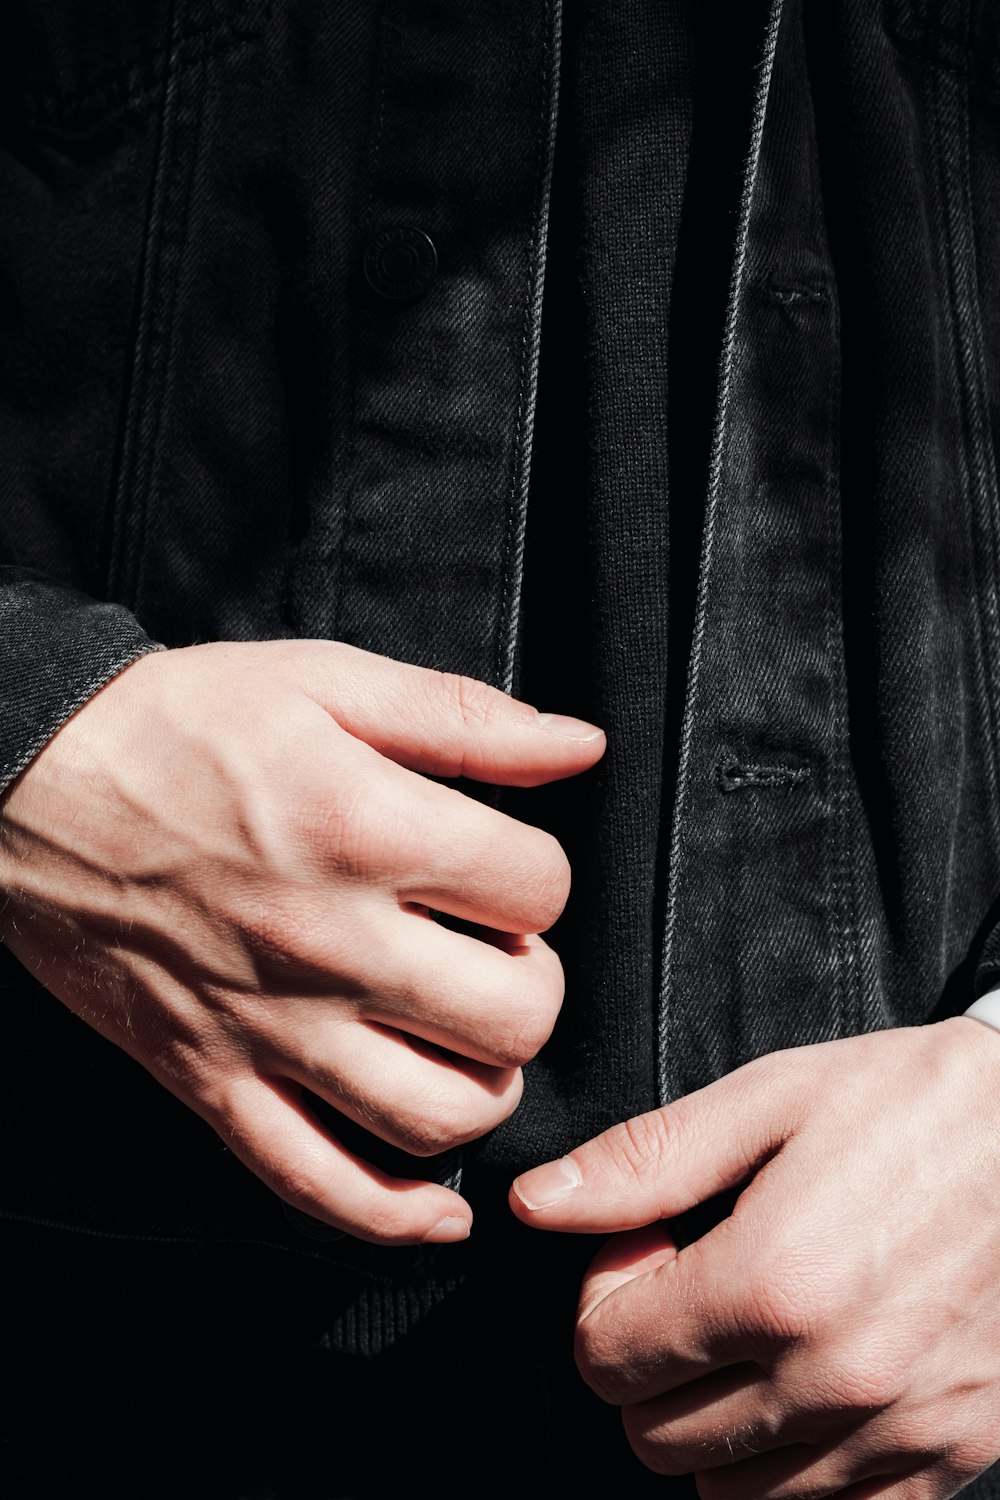 a close-up of a man's hands